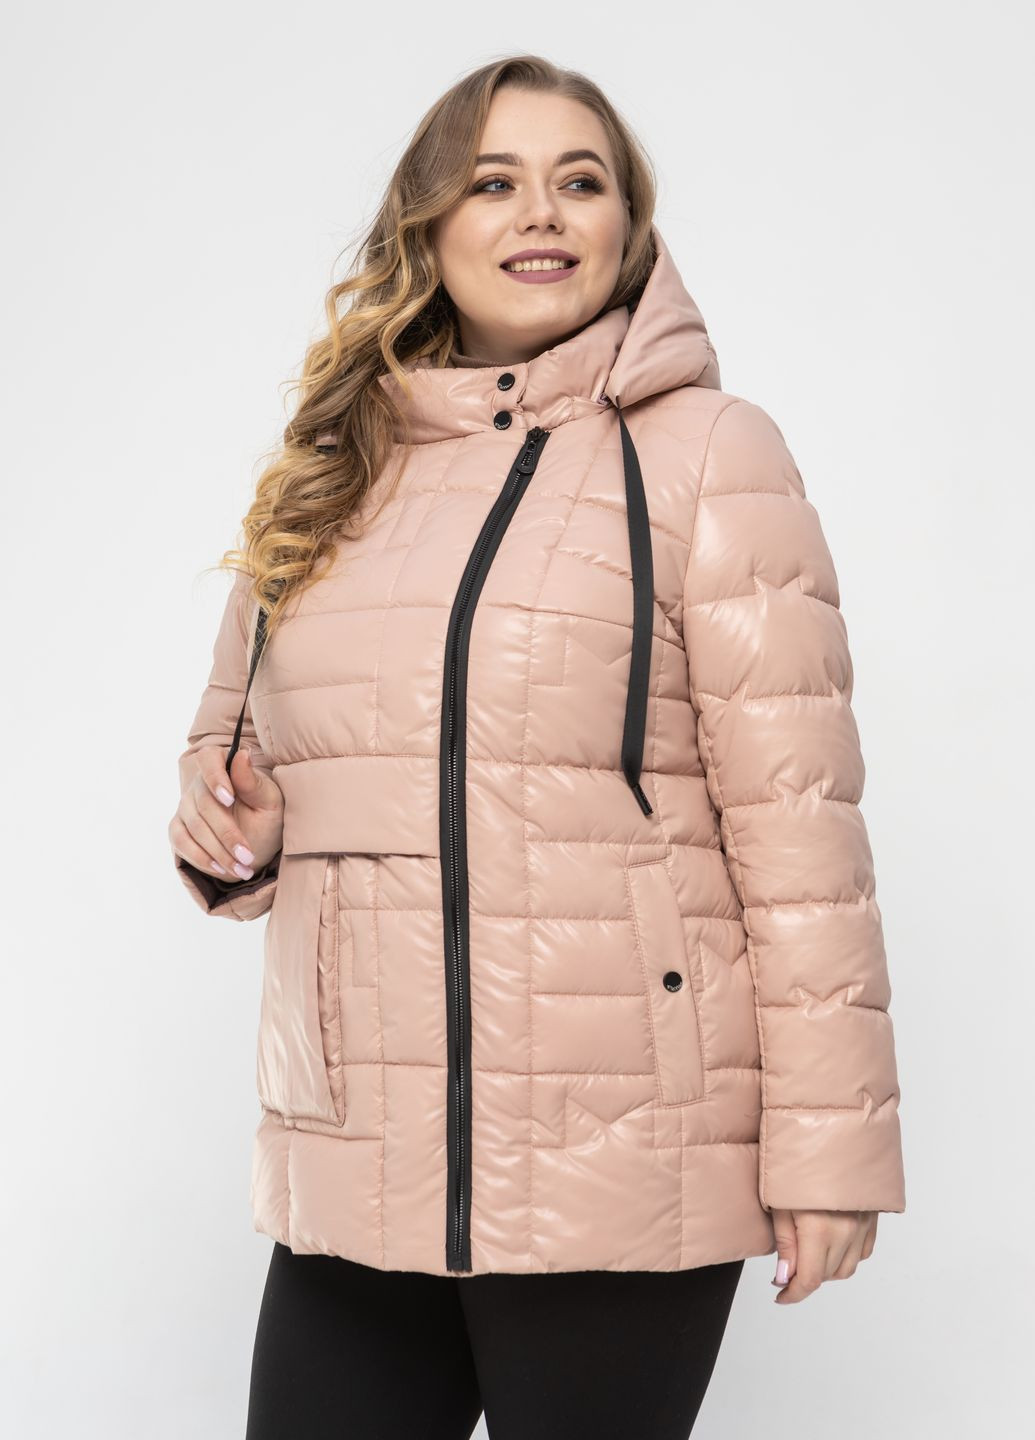 Пудровая демисезонная весенняя женская куртка большого размера куртка-пиджак SK